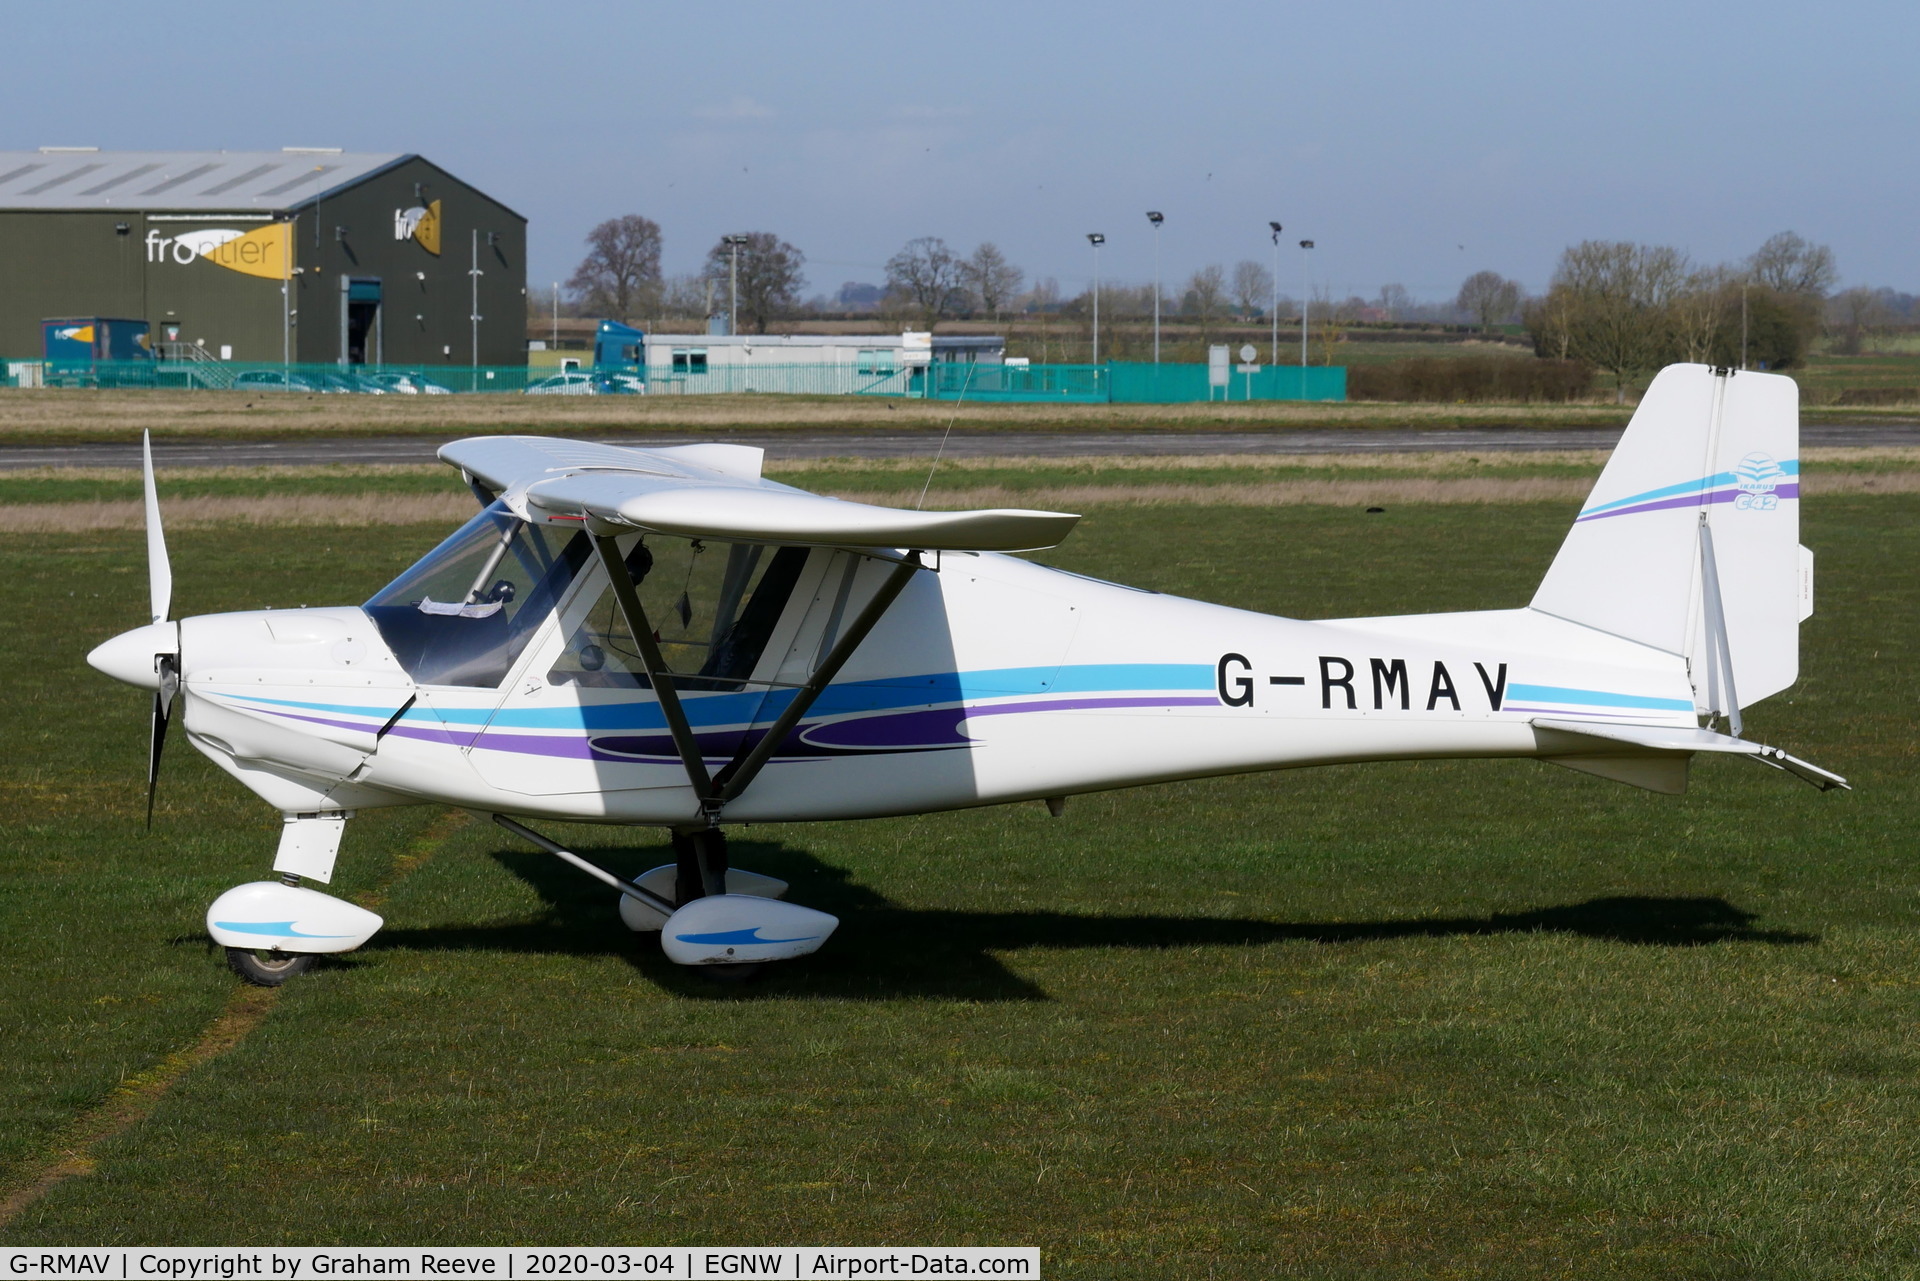 G-RMAV, 2015 Comco Ikarus C42 C/N 1502-7358, Parked at Wickenby.